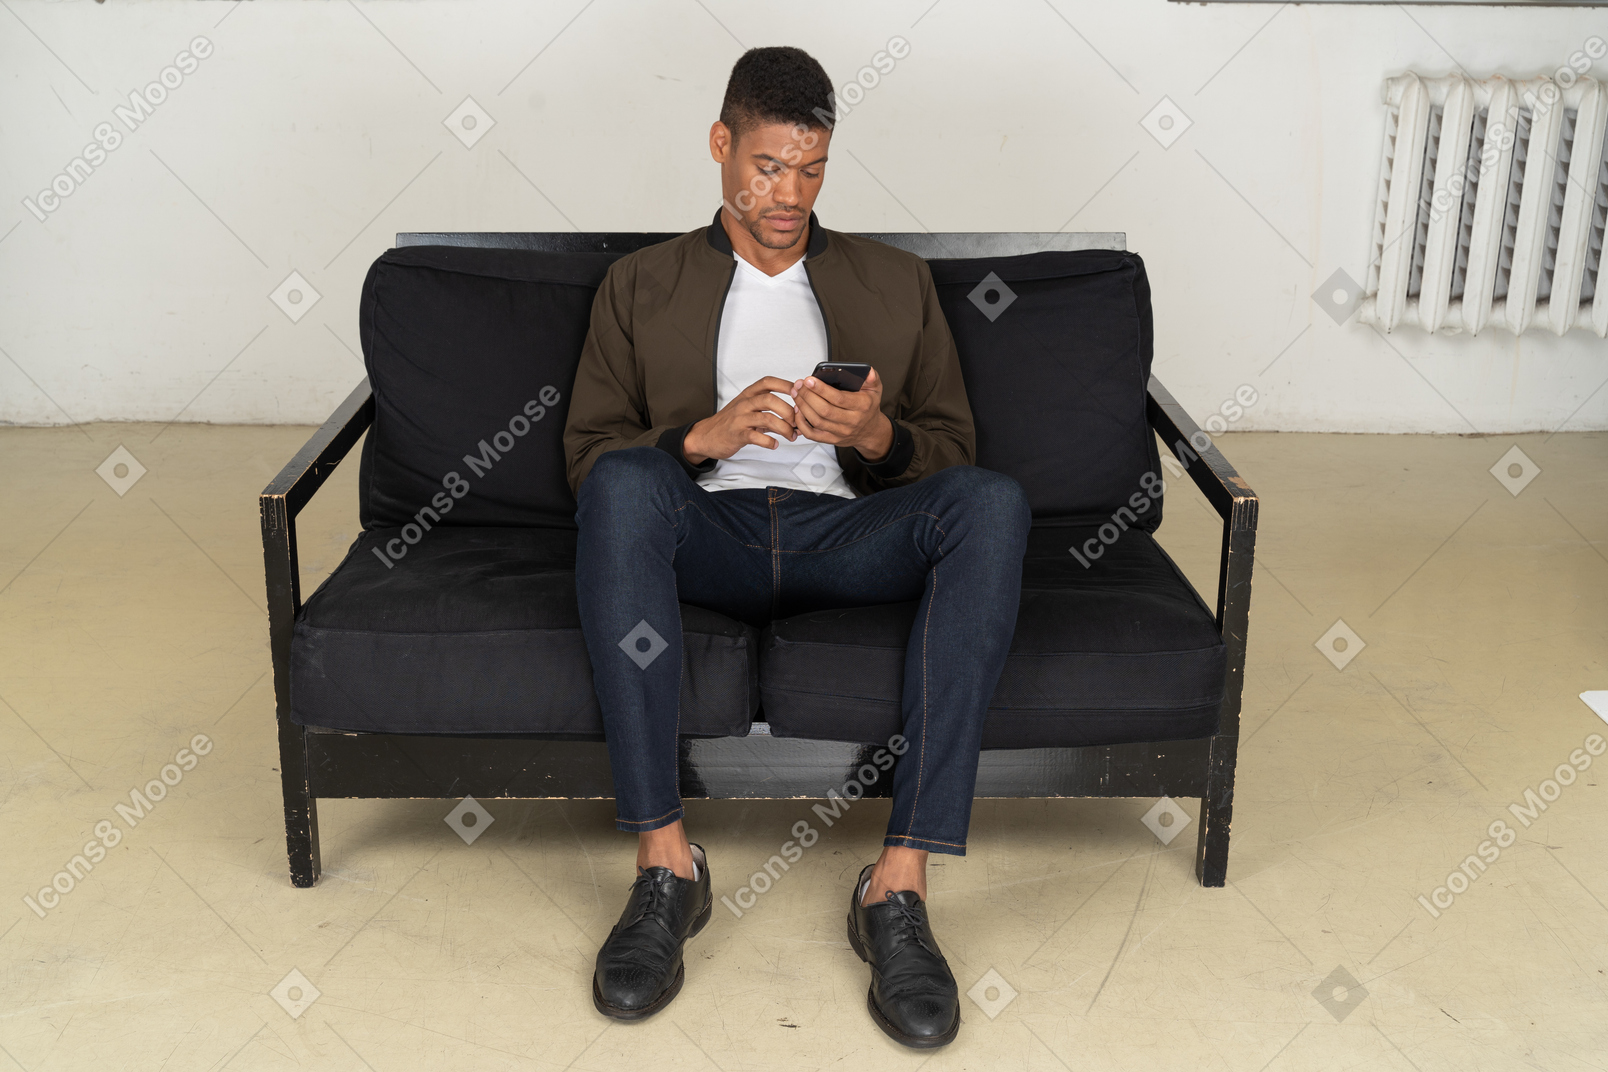 Vista frontale di un giovane seduto su un divano e guardando il suo telefono